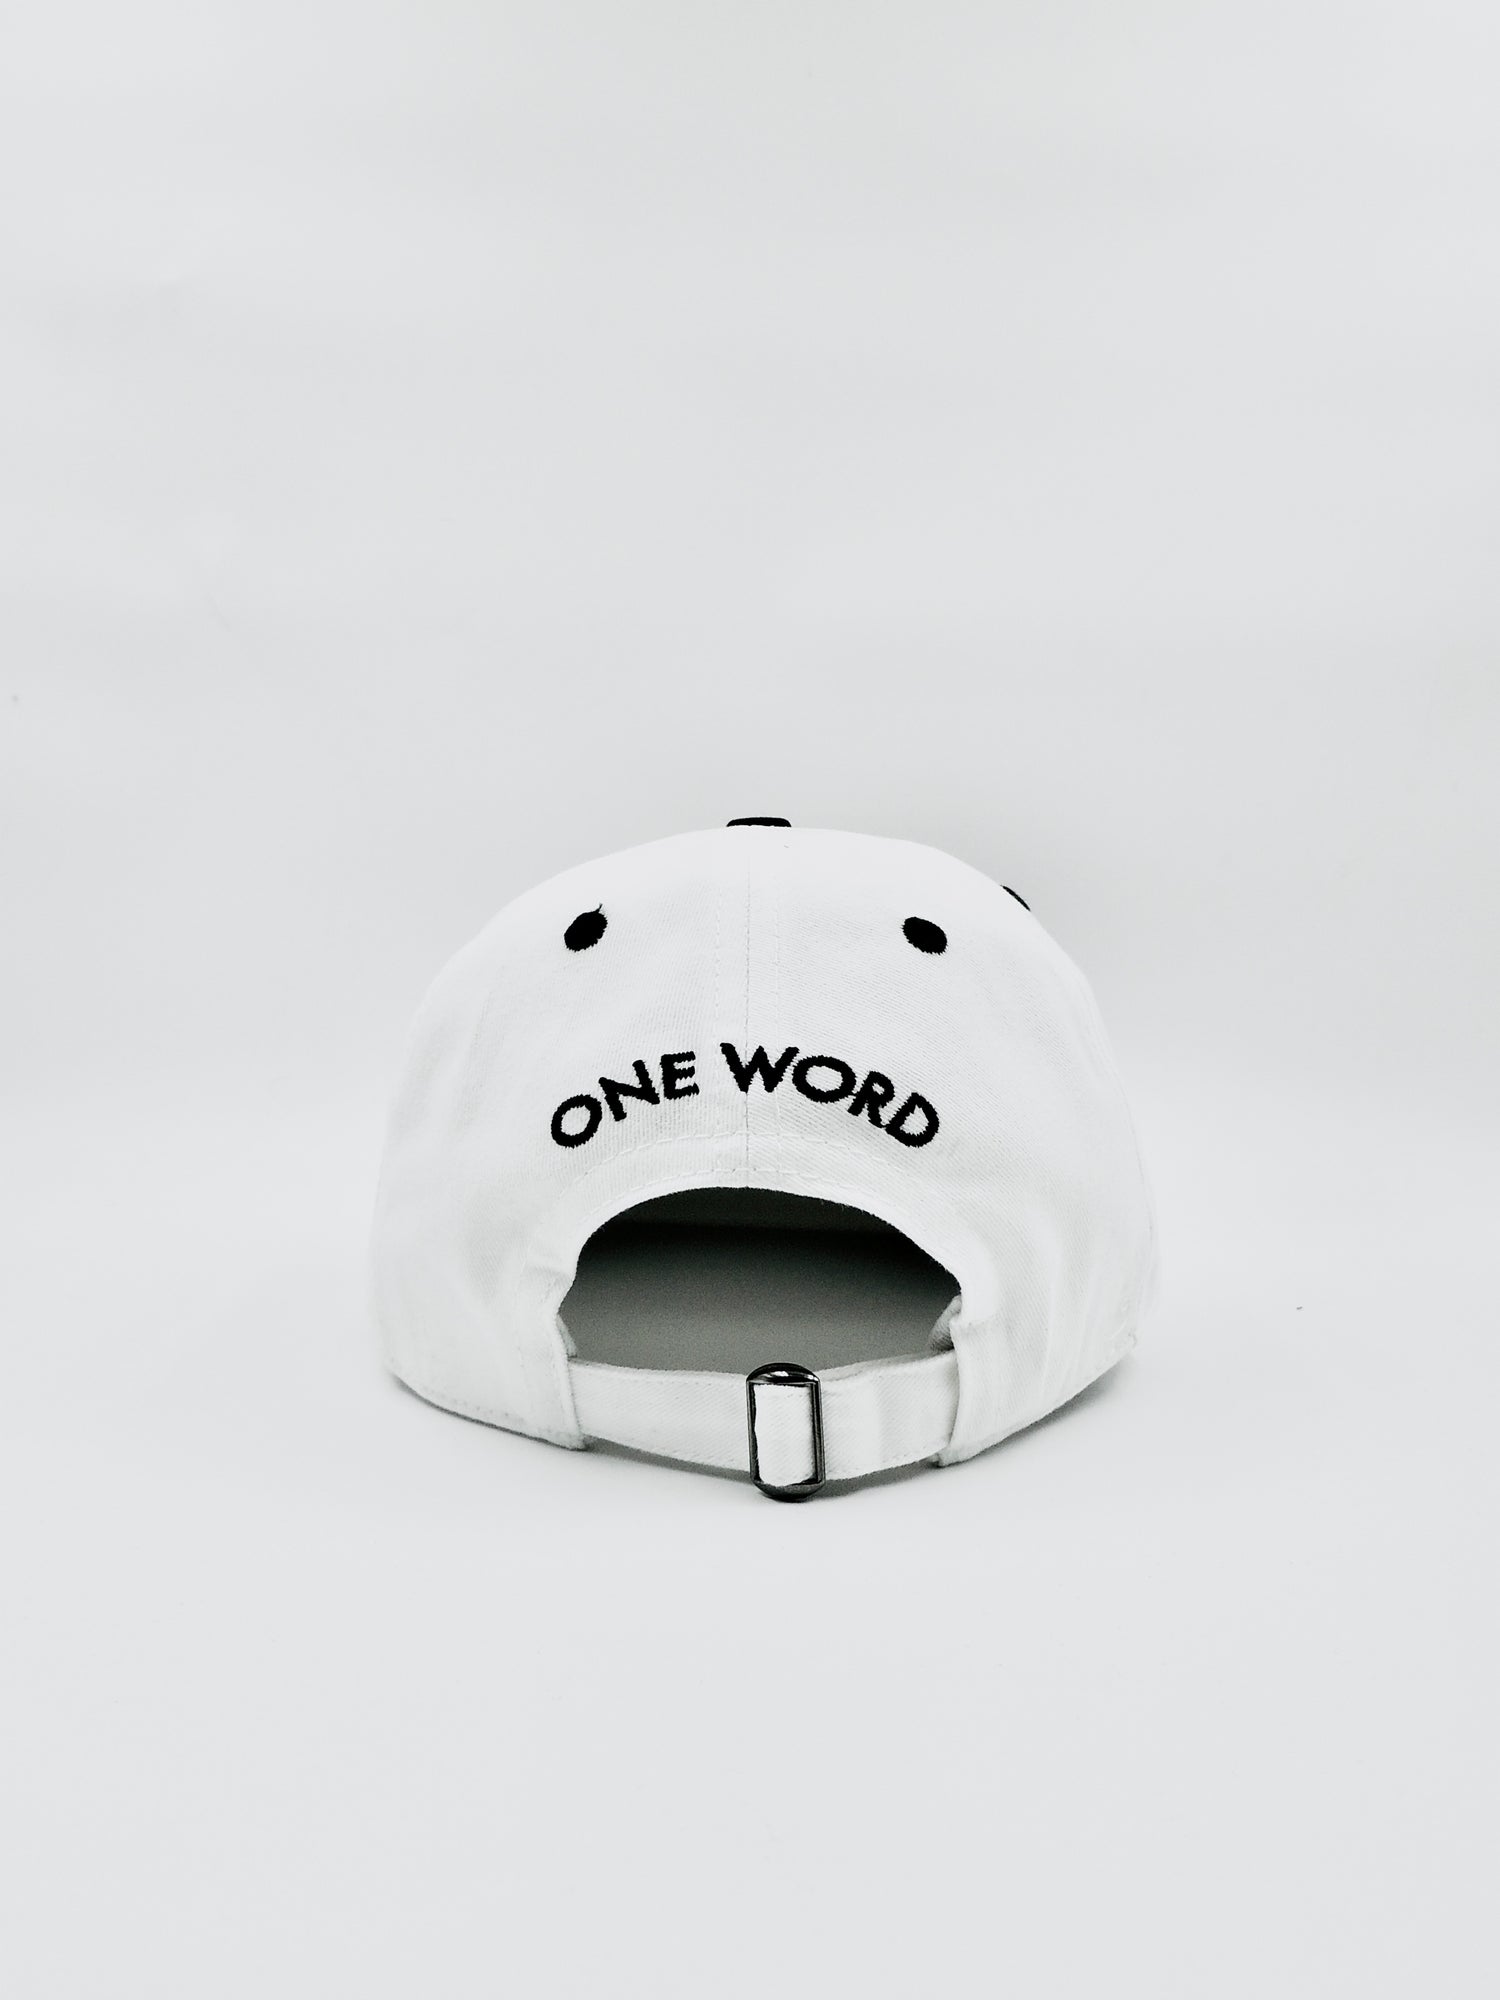 [keyword]-One Word StoreNo Excuses - Cotton Cap